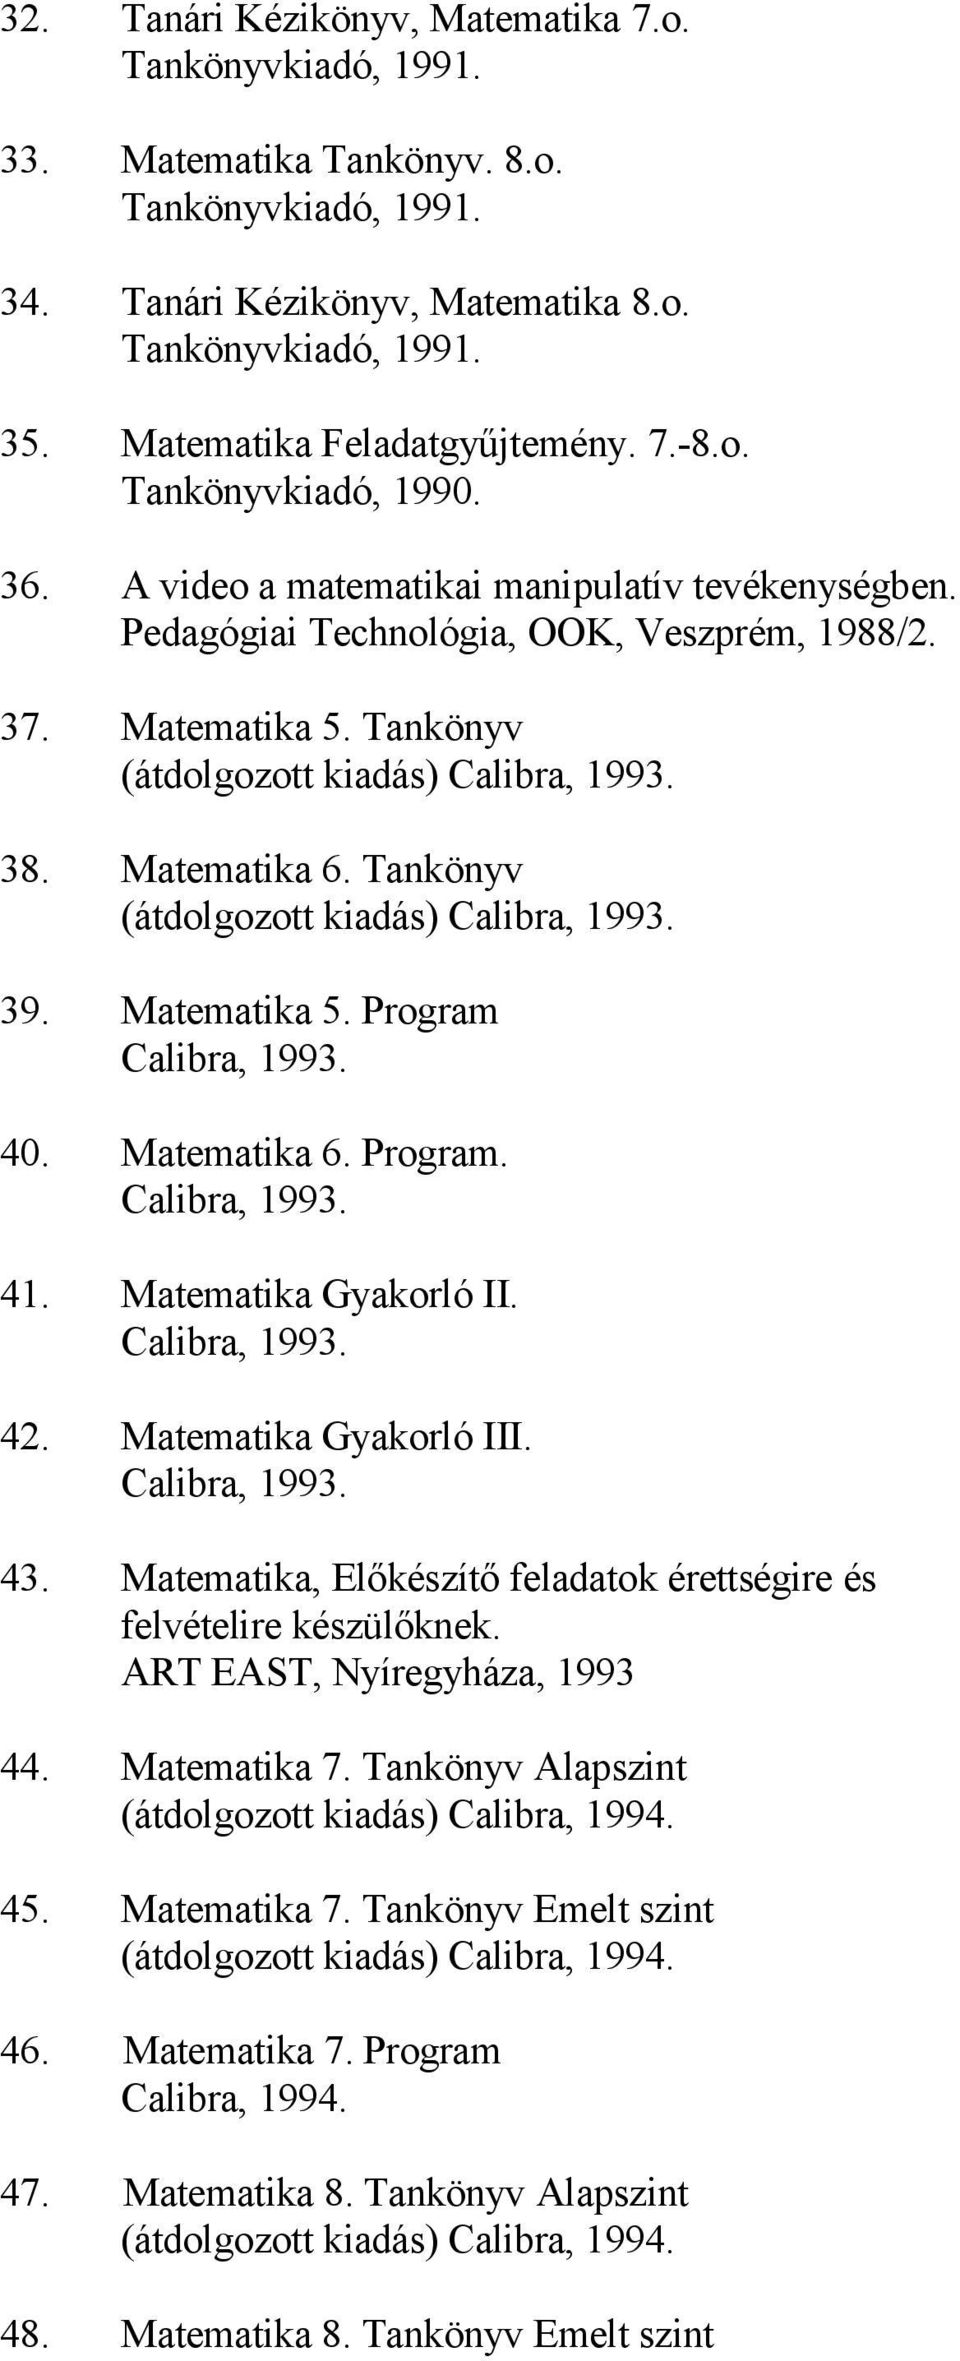 Tankönyv (átdolgozott kiadás) Calibra, 1993. 38. Matematika 6. Tankönyv (átdolgozott kiadás) Calibra, 1993. 39. Matematika 5. Program Calibra, 1993. 40. Matematika 6. Program. Calibra, 1993. 41.